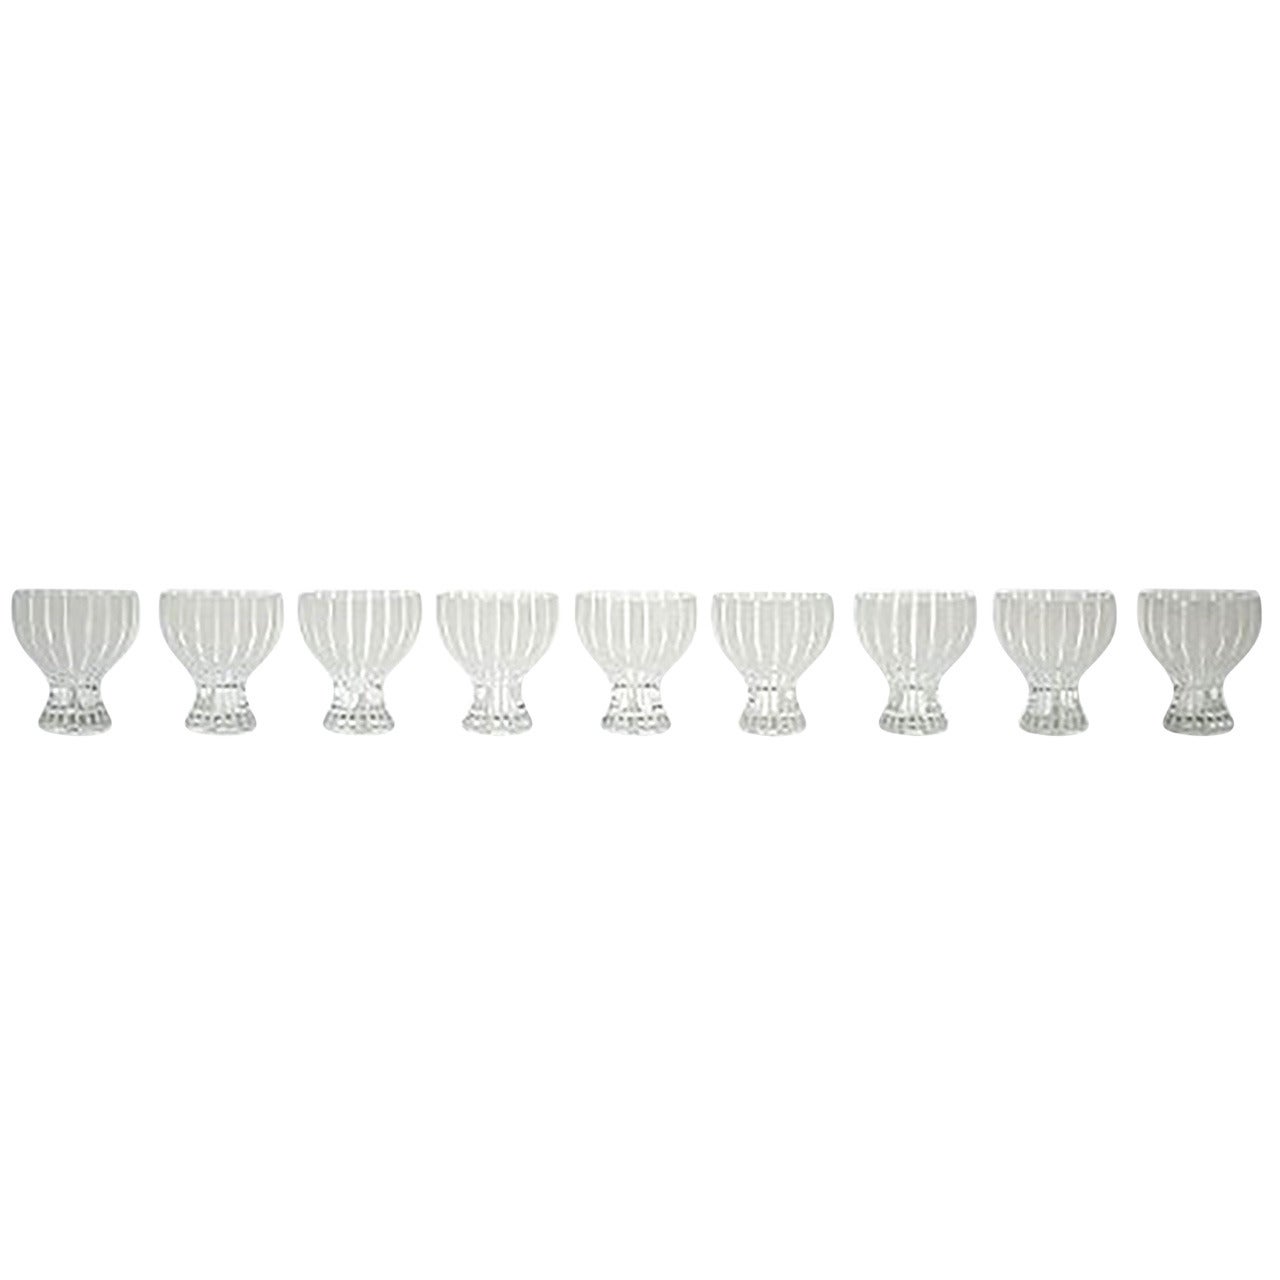 Nine Cocktail Glasses, "Strict" by Bengt Orup for Johansfors